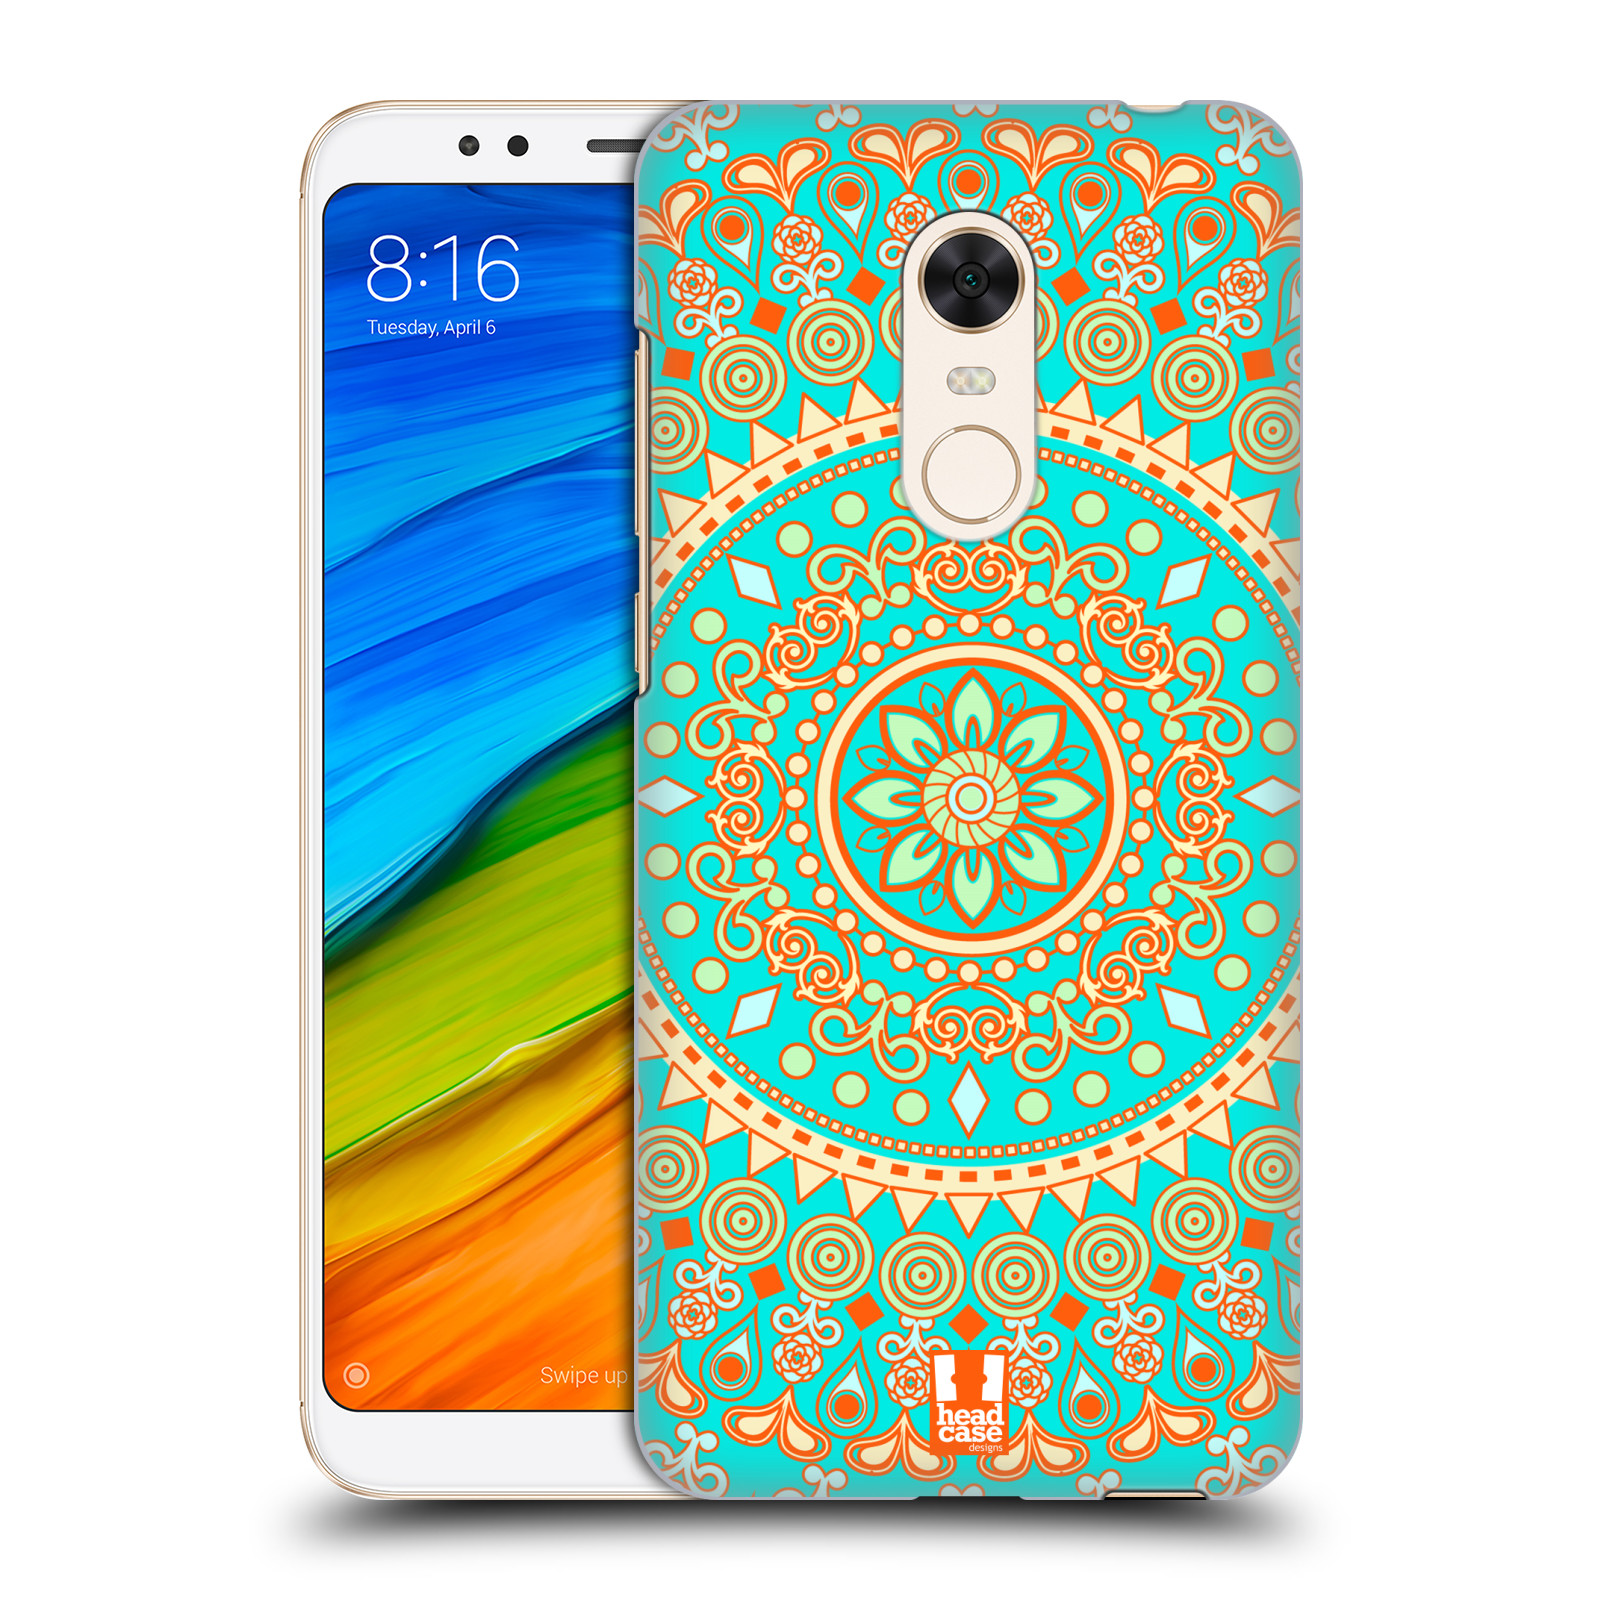 HEAD CASE plastový obal na mobil Xiaomi Redmi 5 PLUS vzor Indie Mandala slunce barevný motiv TYRKYSOVÁ, ZELENÁ